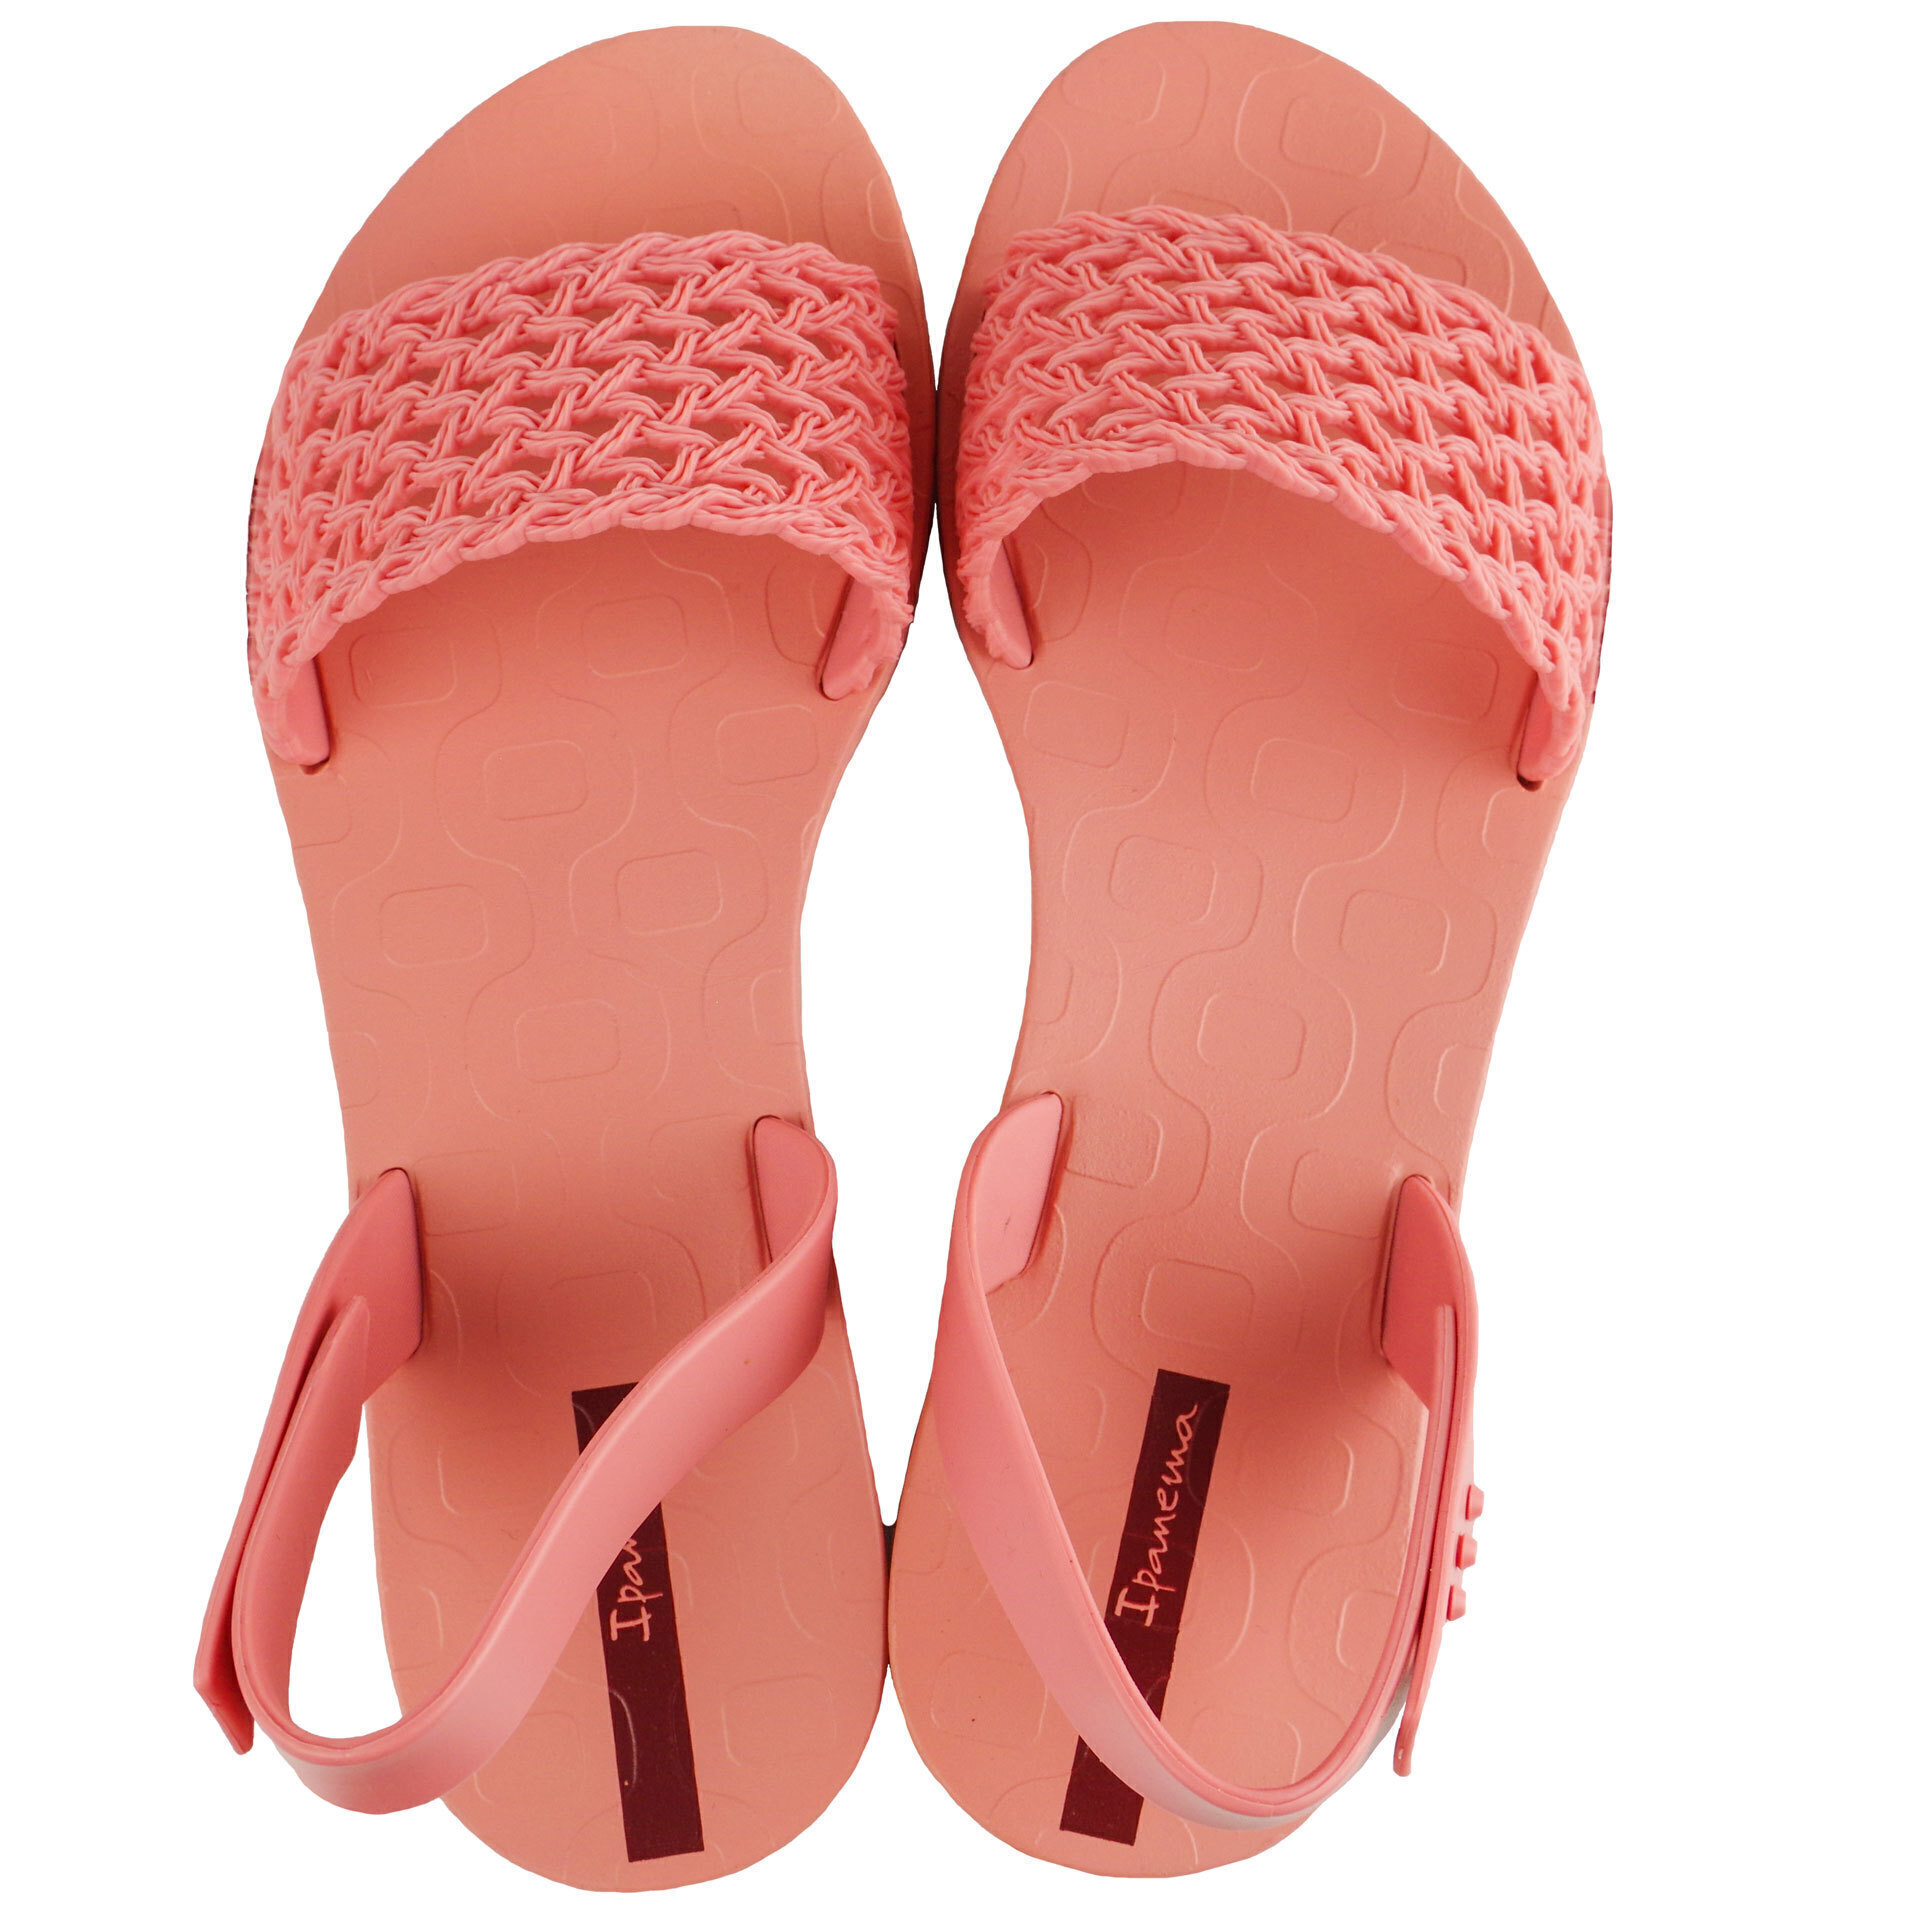 Пляжная обувь для девочки - босоножки подростковые (2011) 35-42 размеры, цвет Розовый – Sole Kids